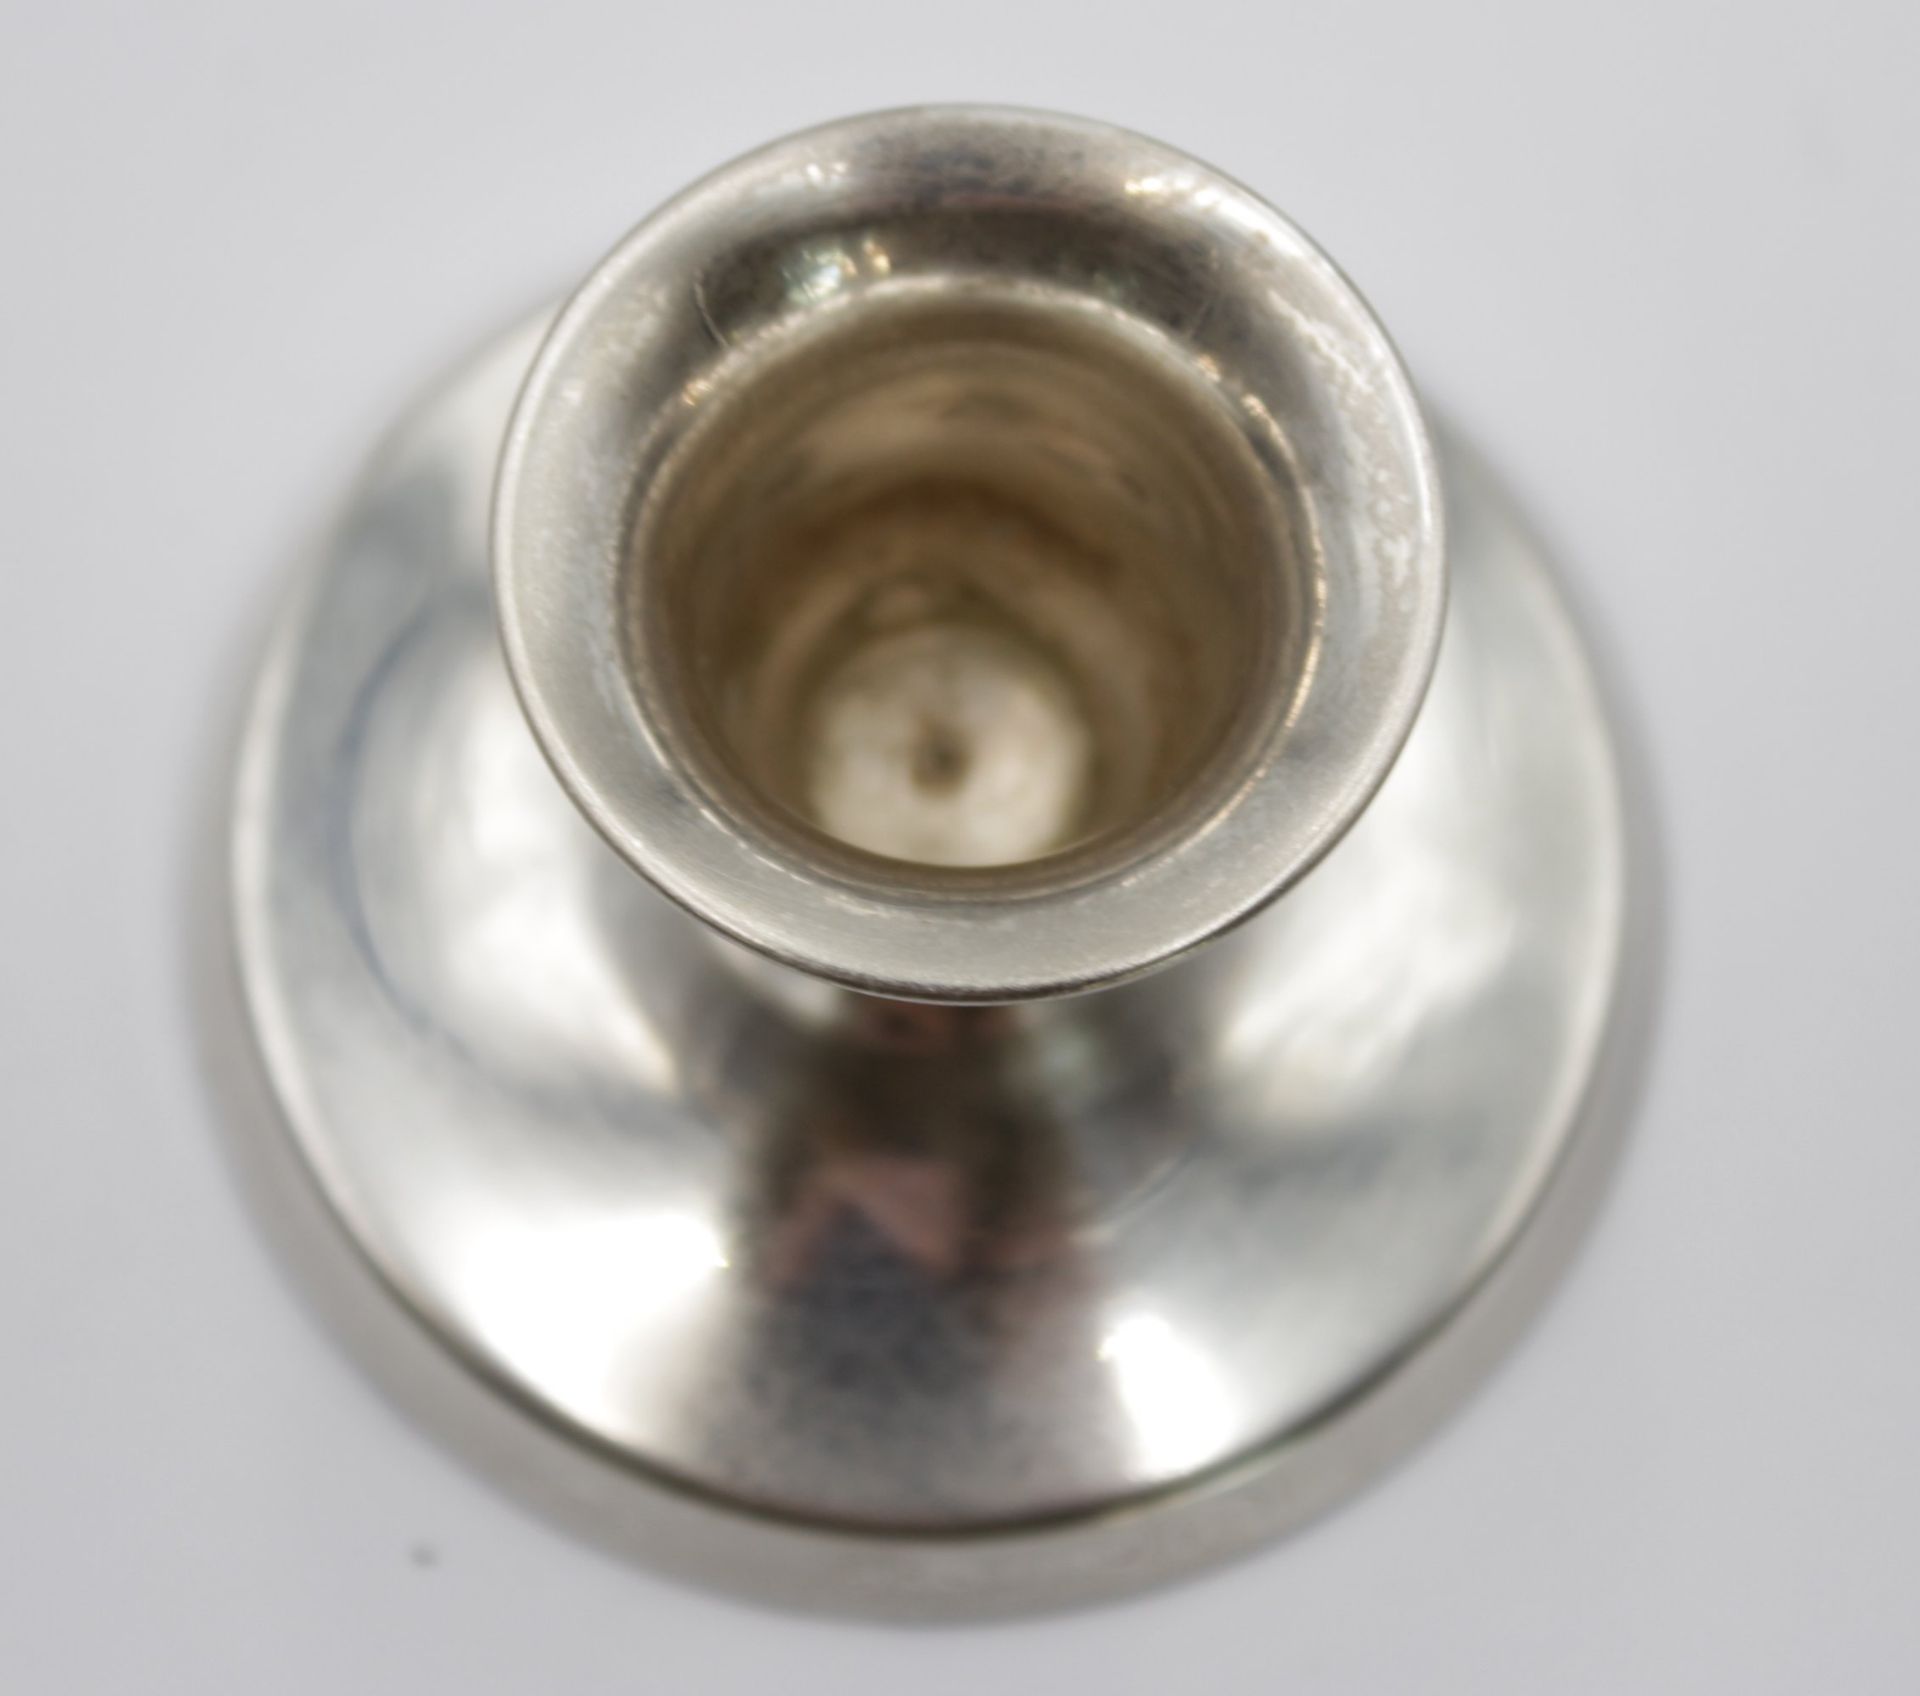 kl. Leuchter, 830er Silber, Richmond, gefüllter Stand, zus. 73gr., H-4,5cm. - Image 2 of 4